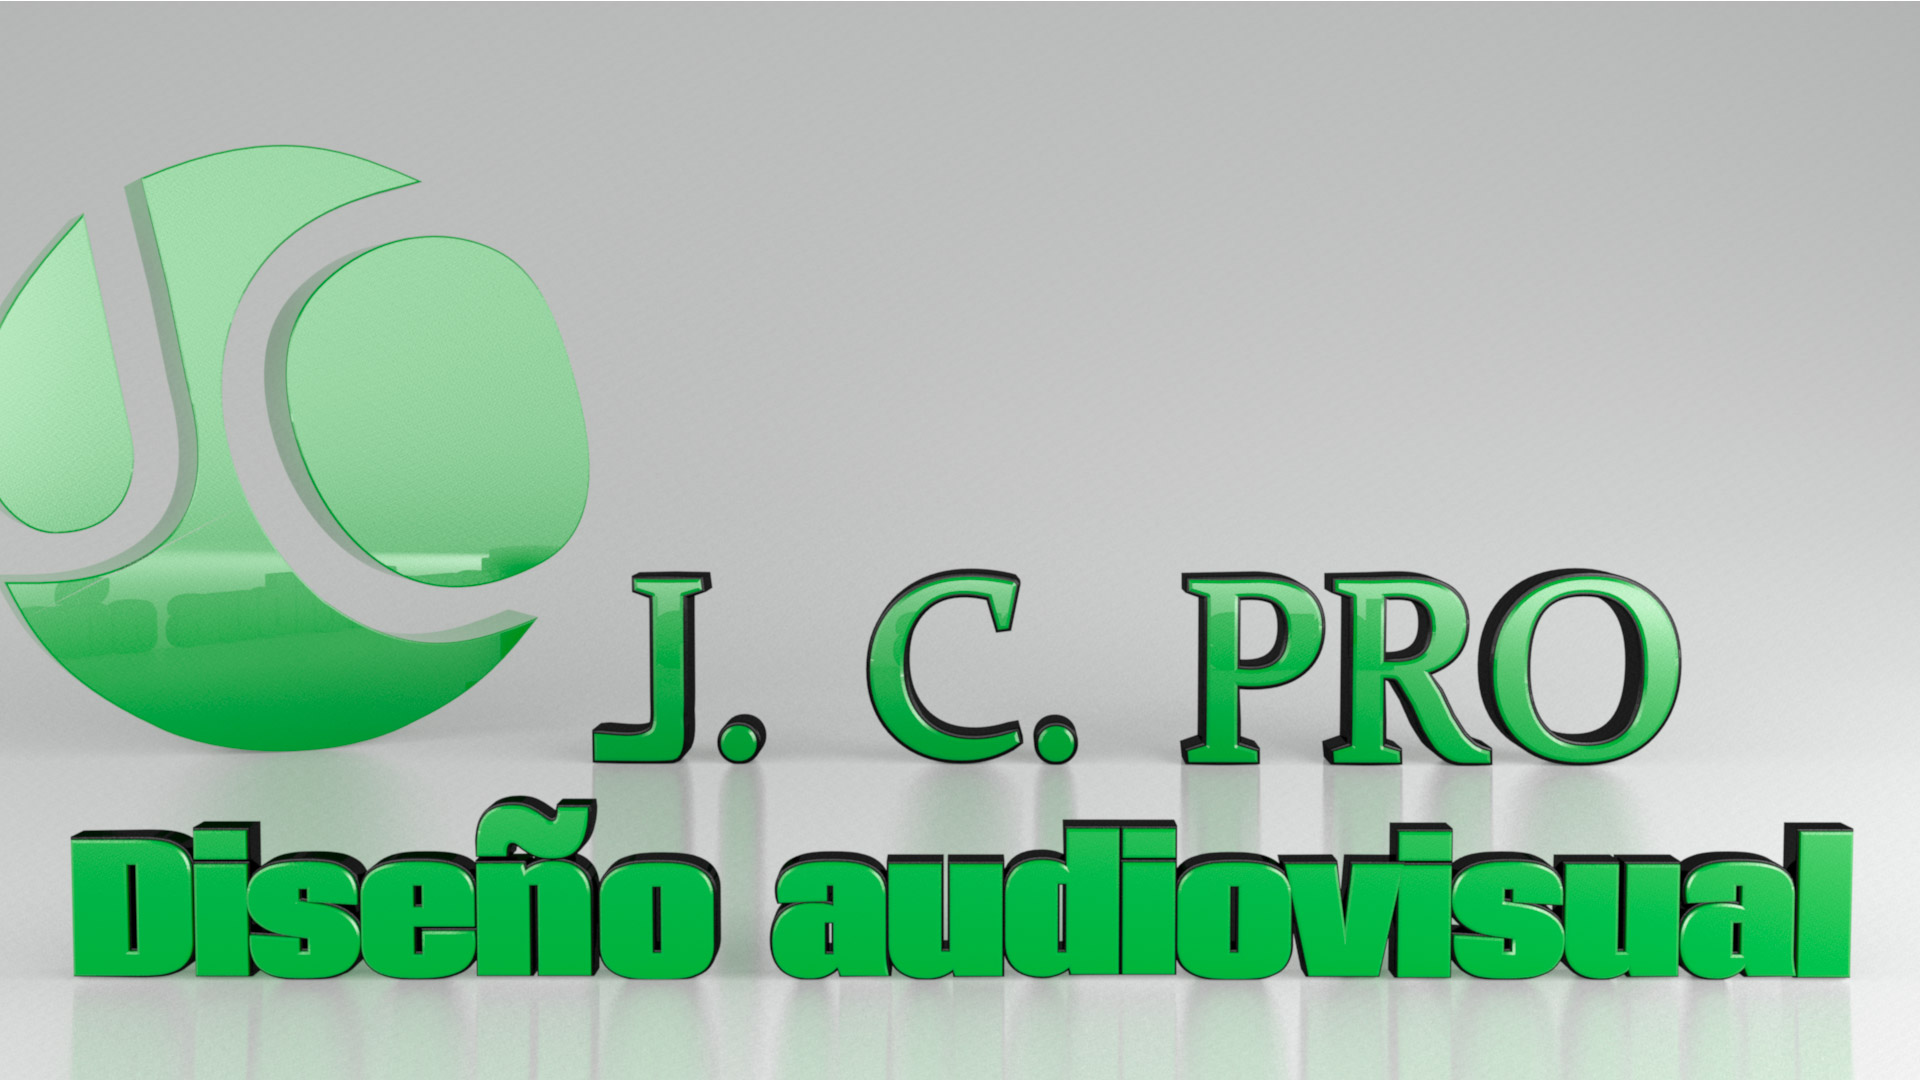 Nuevo logo de J.C.PRO para 2016. Realizado con el software 3D max y en postproducción con After Effects. Creado y realizado en 2016 por Julio Caminero.